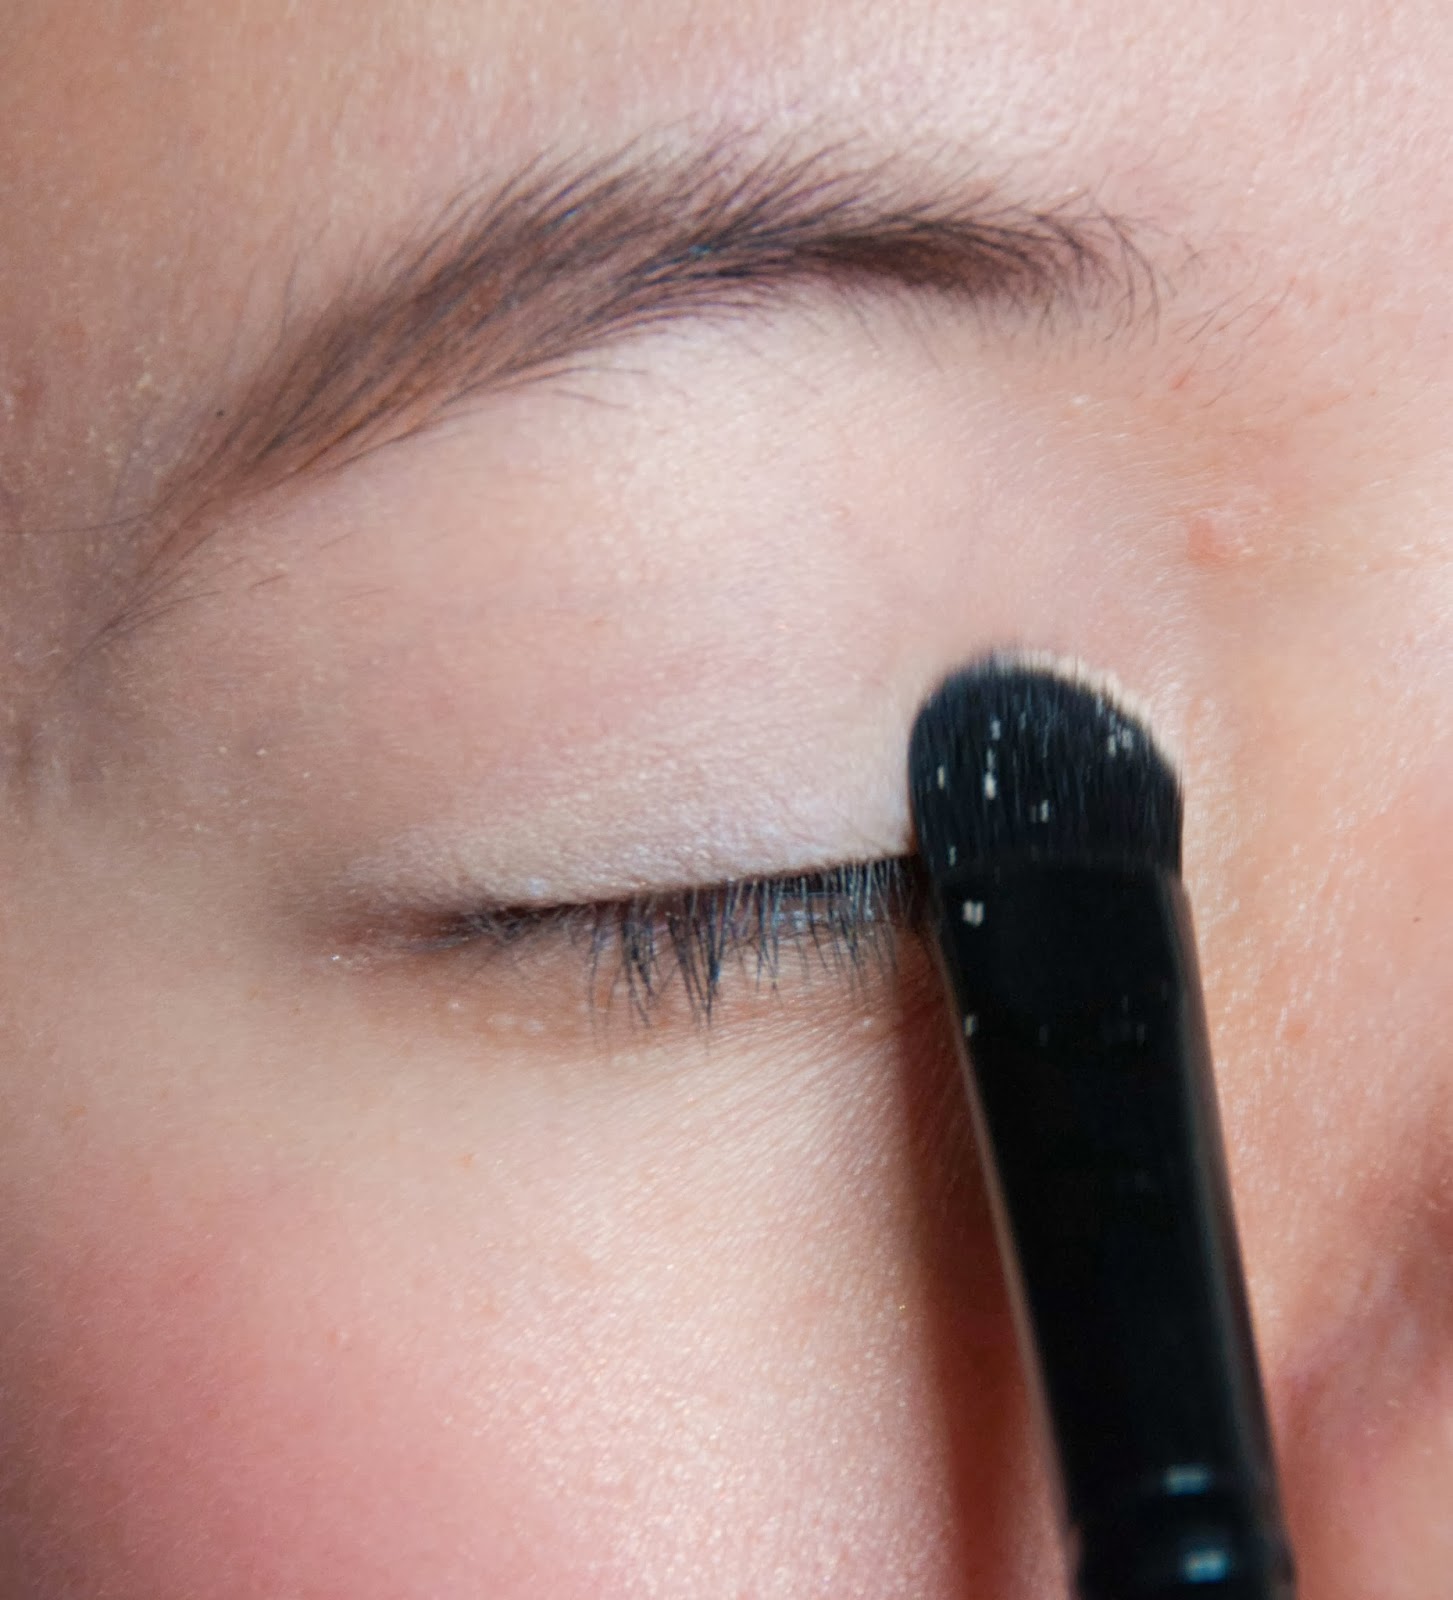 beauty makeup eye shadow tutorial pink purple eyeliner 